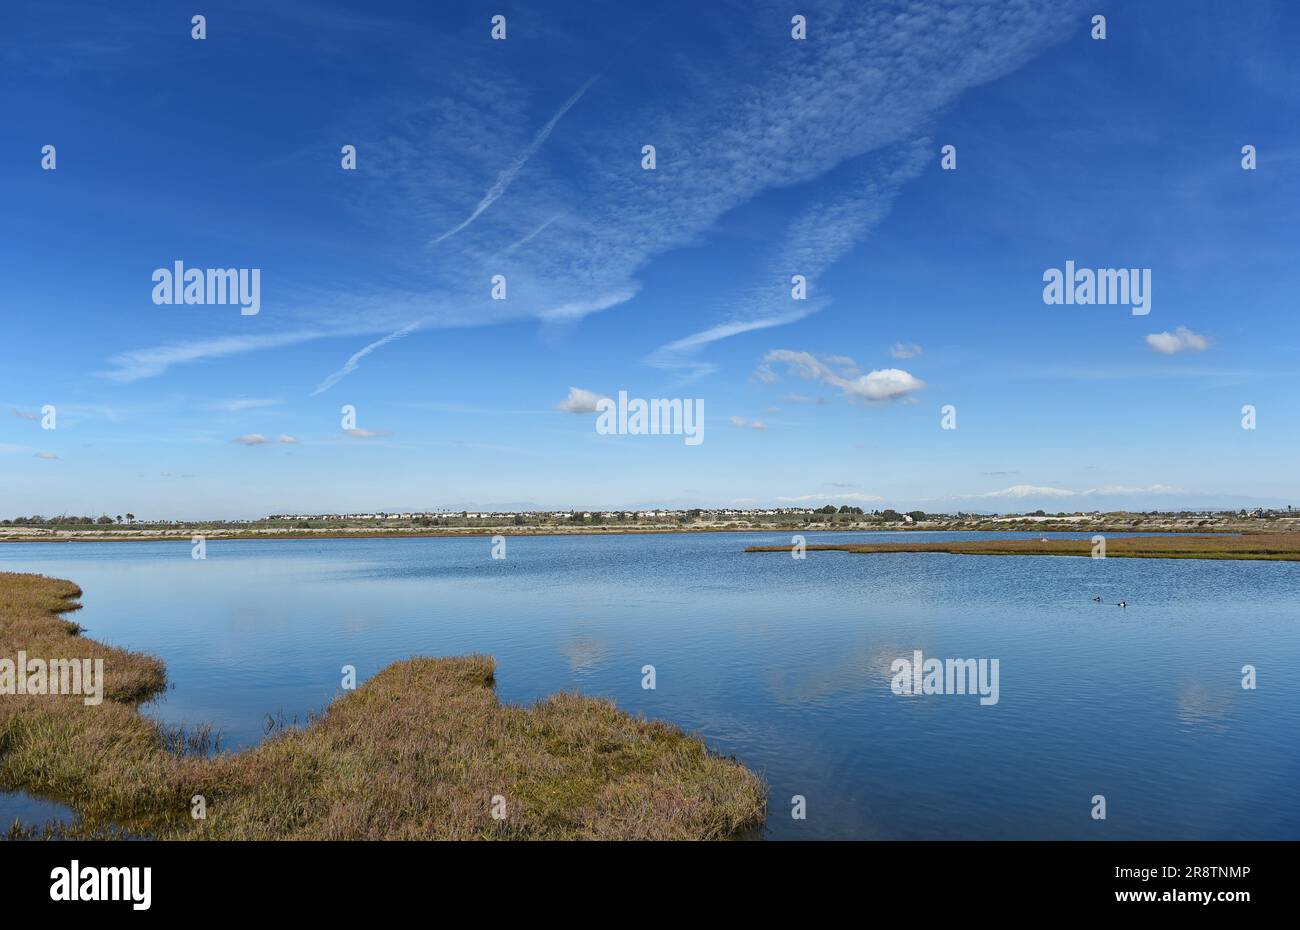 Herbes marécageuses dans les marais Bolsa Chica Wetlands de Huntington Beach, Californie, avec un ciel bleu strié de nuages. Banque D'Images